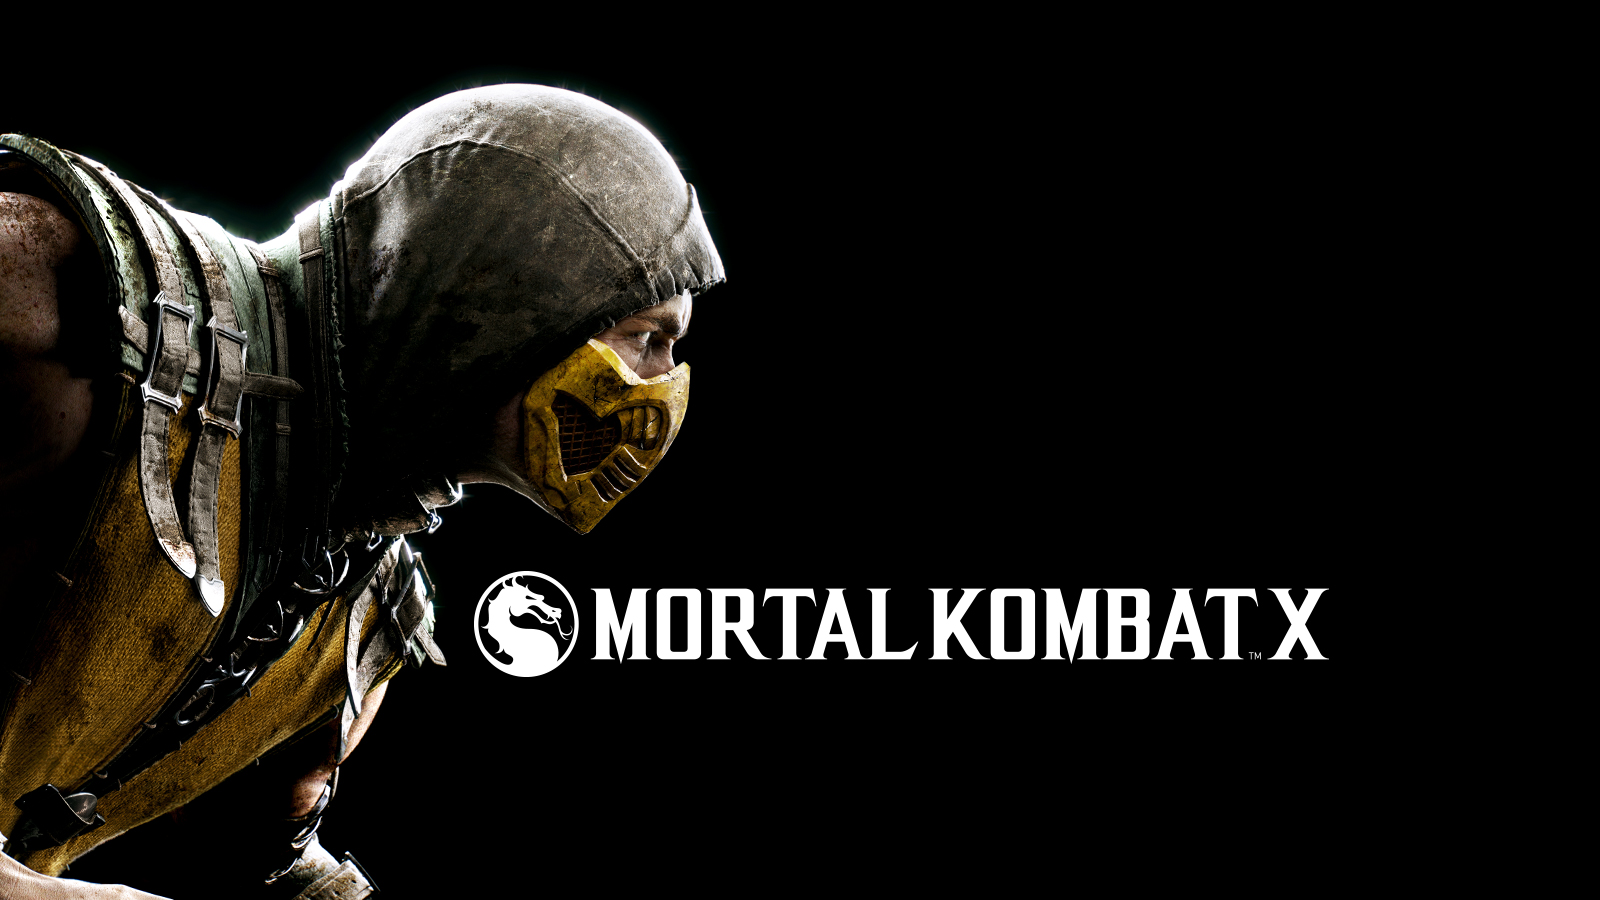 DiRT, Mortal Kombat, série LEGO e muitos outros estão em promoção na Live Mortal-kombat-03174948237327